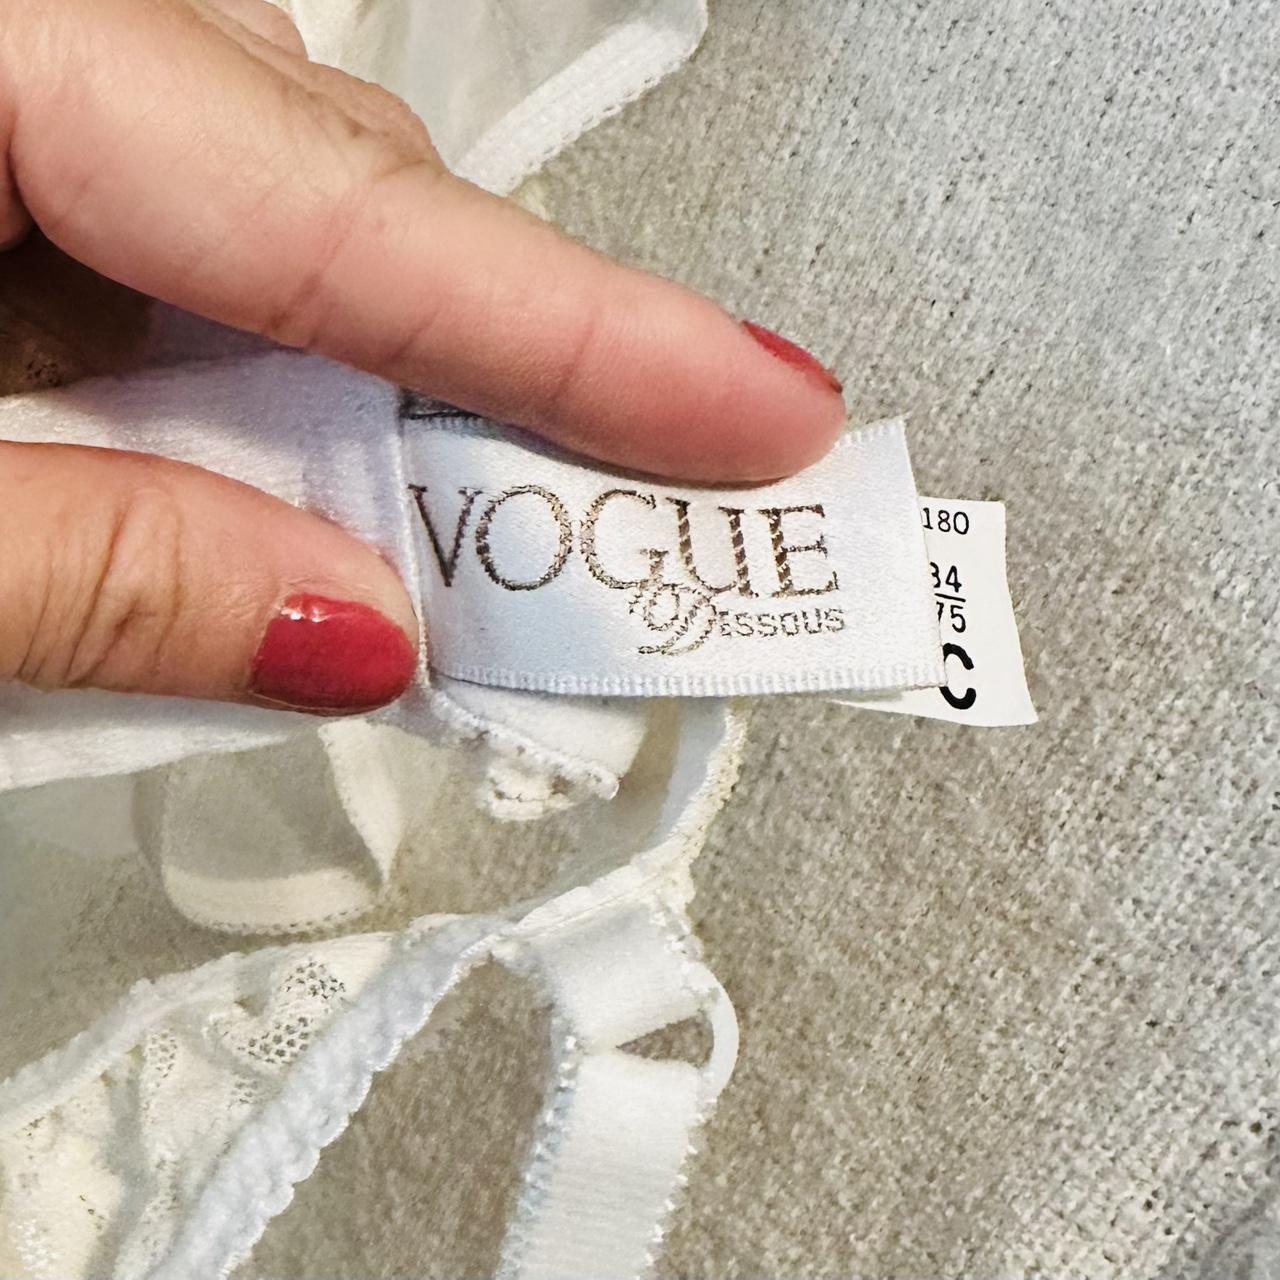 Vintage Vogue Dessous white lace bra Balconette... - Depop